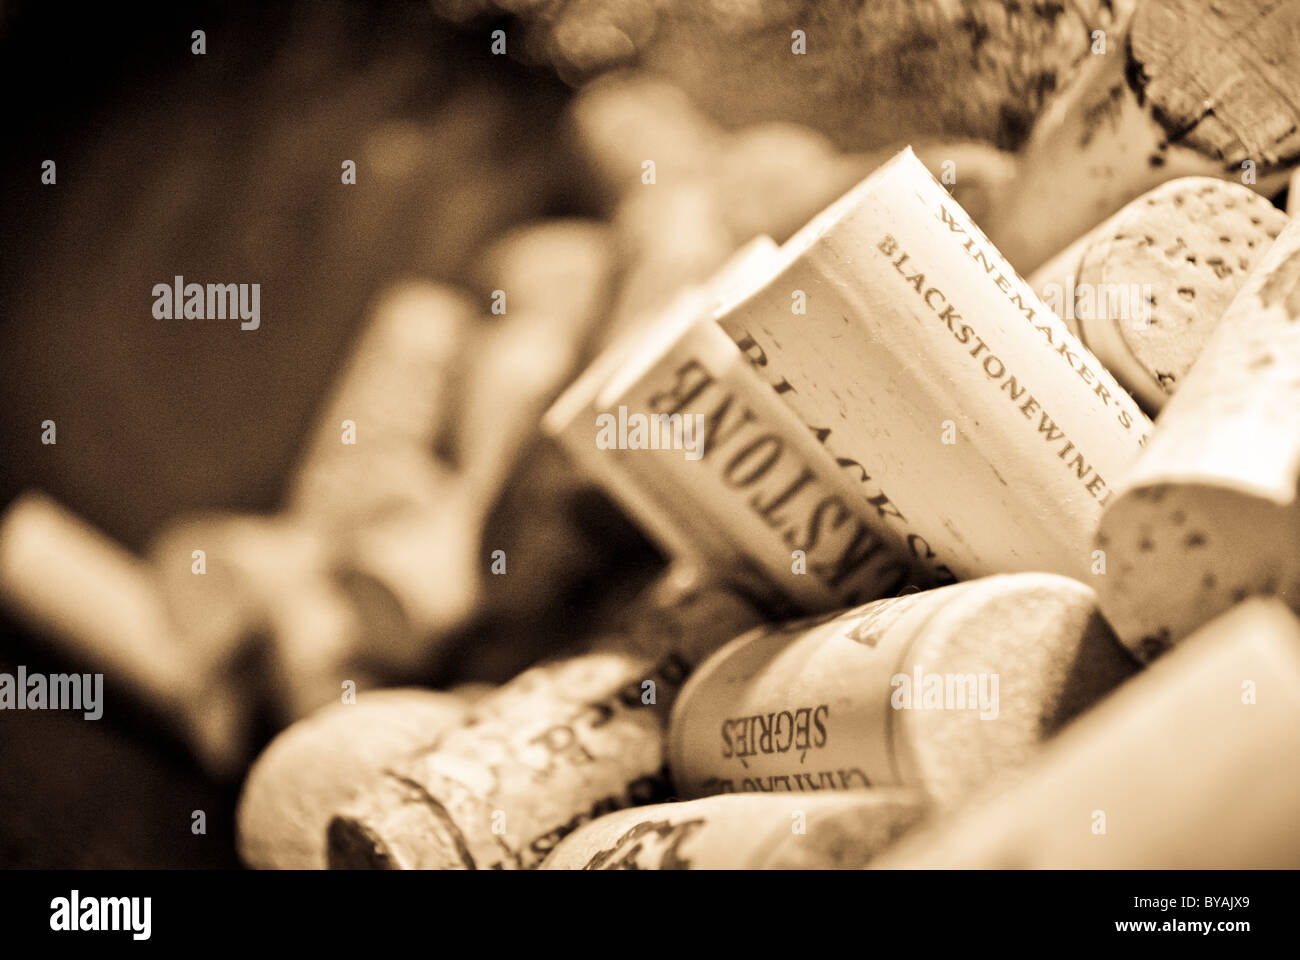 Bottiglia di vino i tappi di sughero. Foto Stock